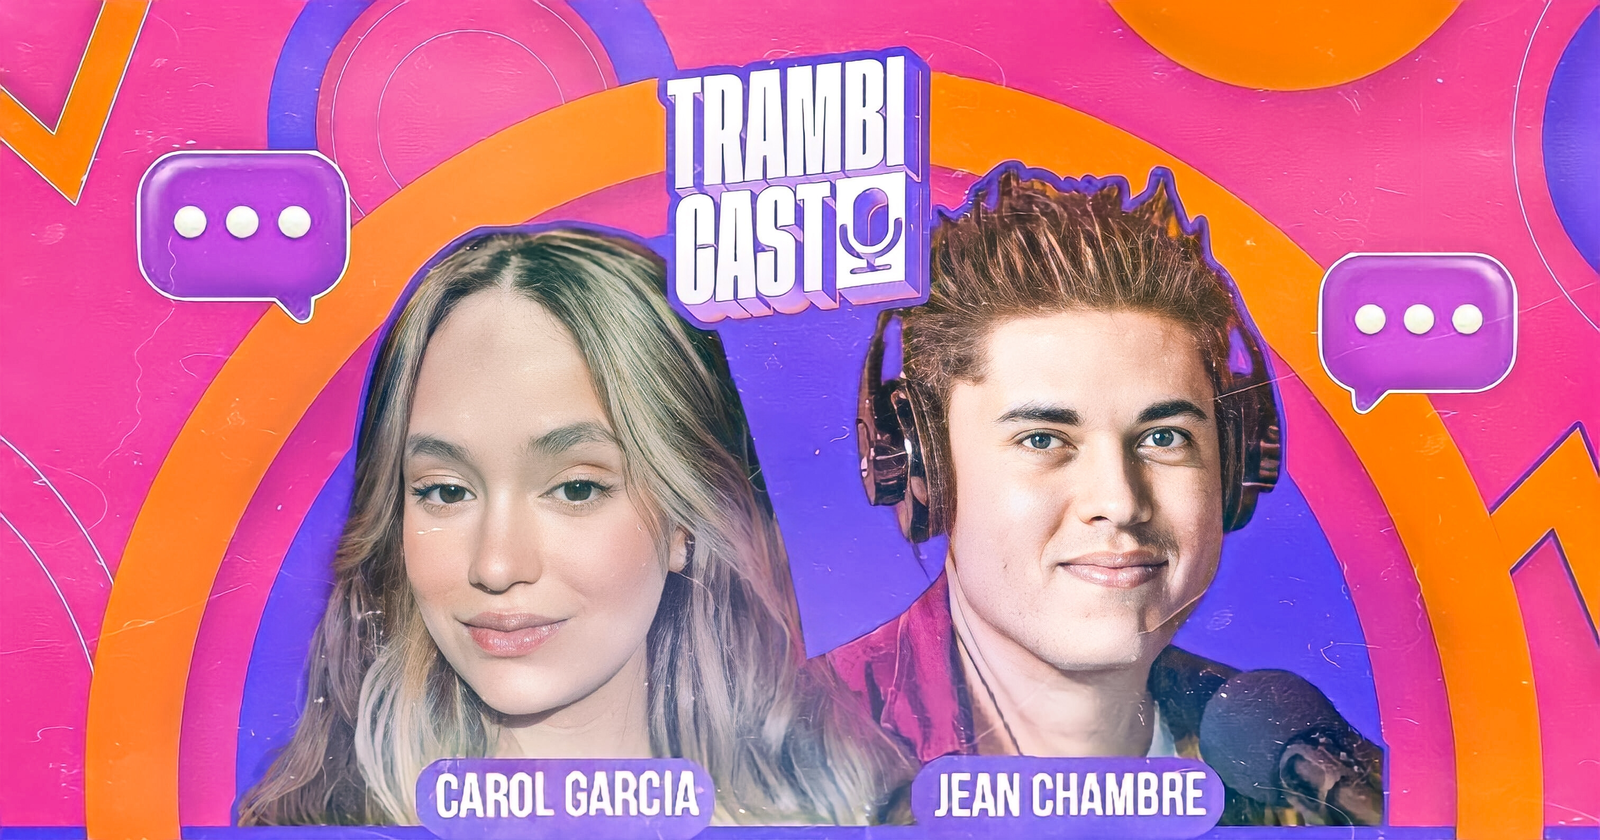 Trambicast: conheça o podcast comandado por Jean Chambre e Carol Garcia